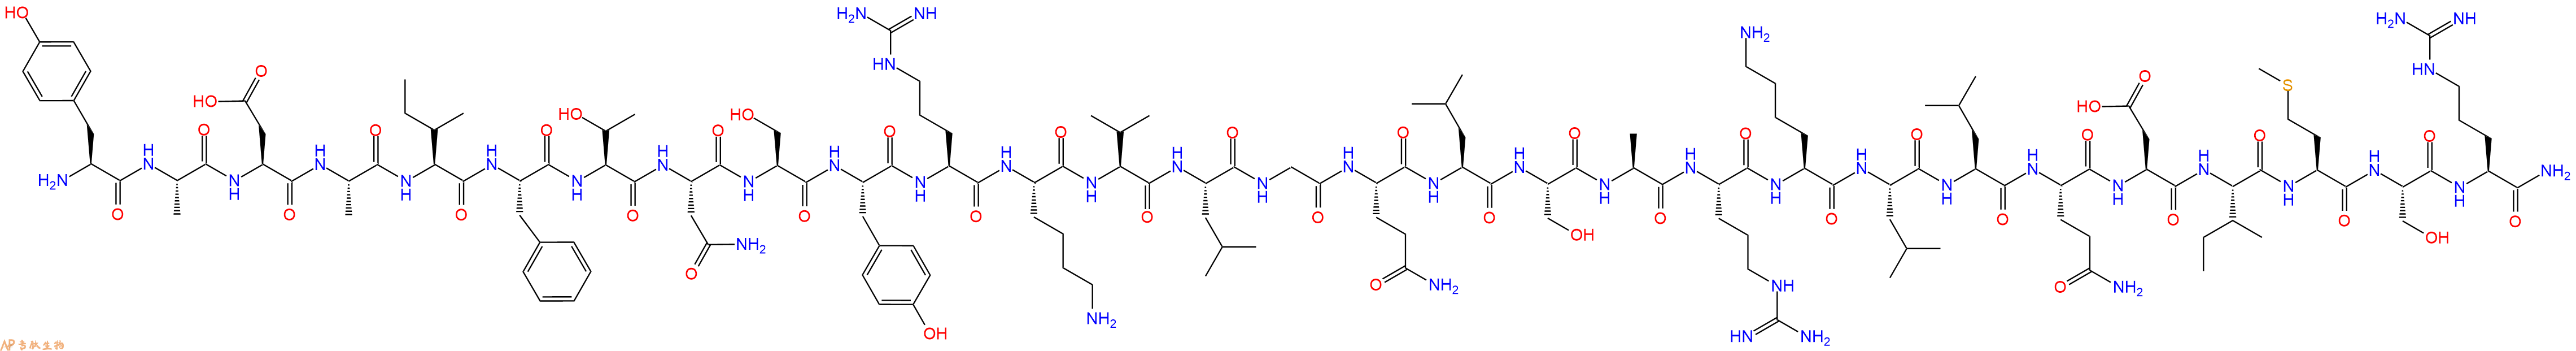 专肽生物产品醋酸舍莫瑞林、Sermorelin、GHRF(1-29), amide, human86168-78-7/516482-86-3/114466-38-5